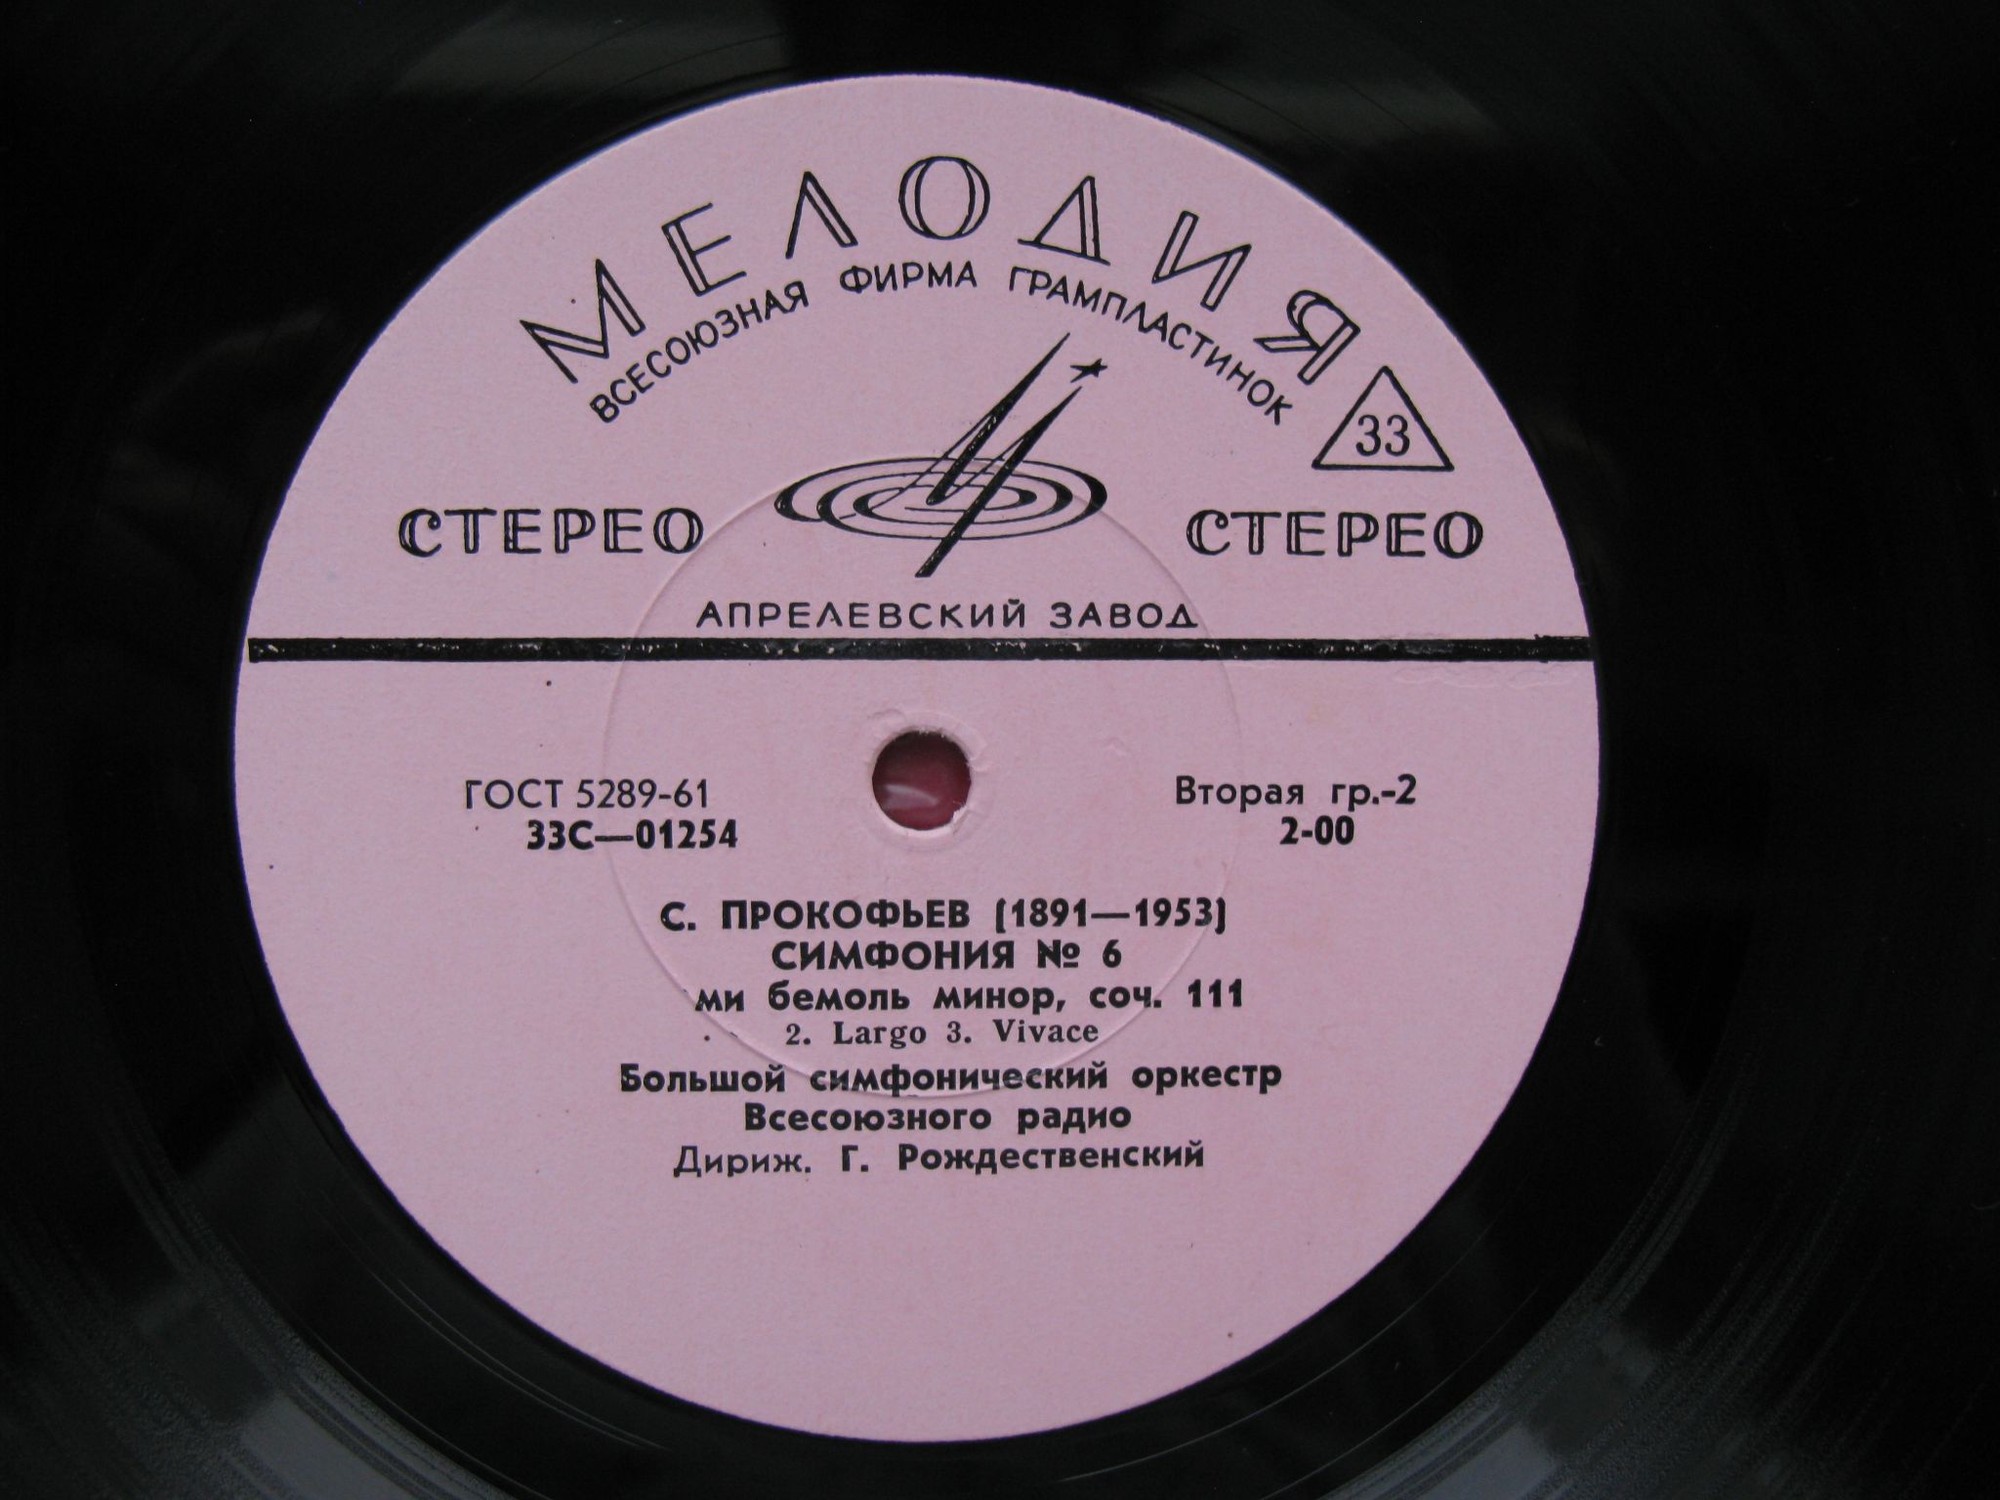 С. ПРОКОФЬЕВ (1891-1953) Симфония № 6 ми бемоль минор, соч. 111 (Г. Рождественский)